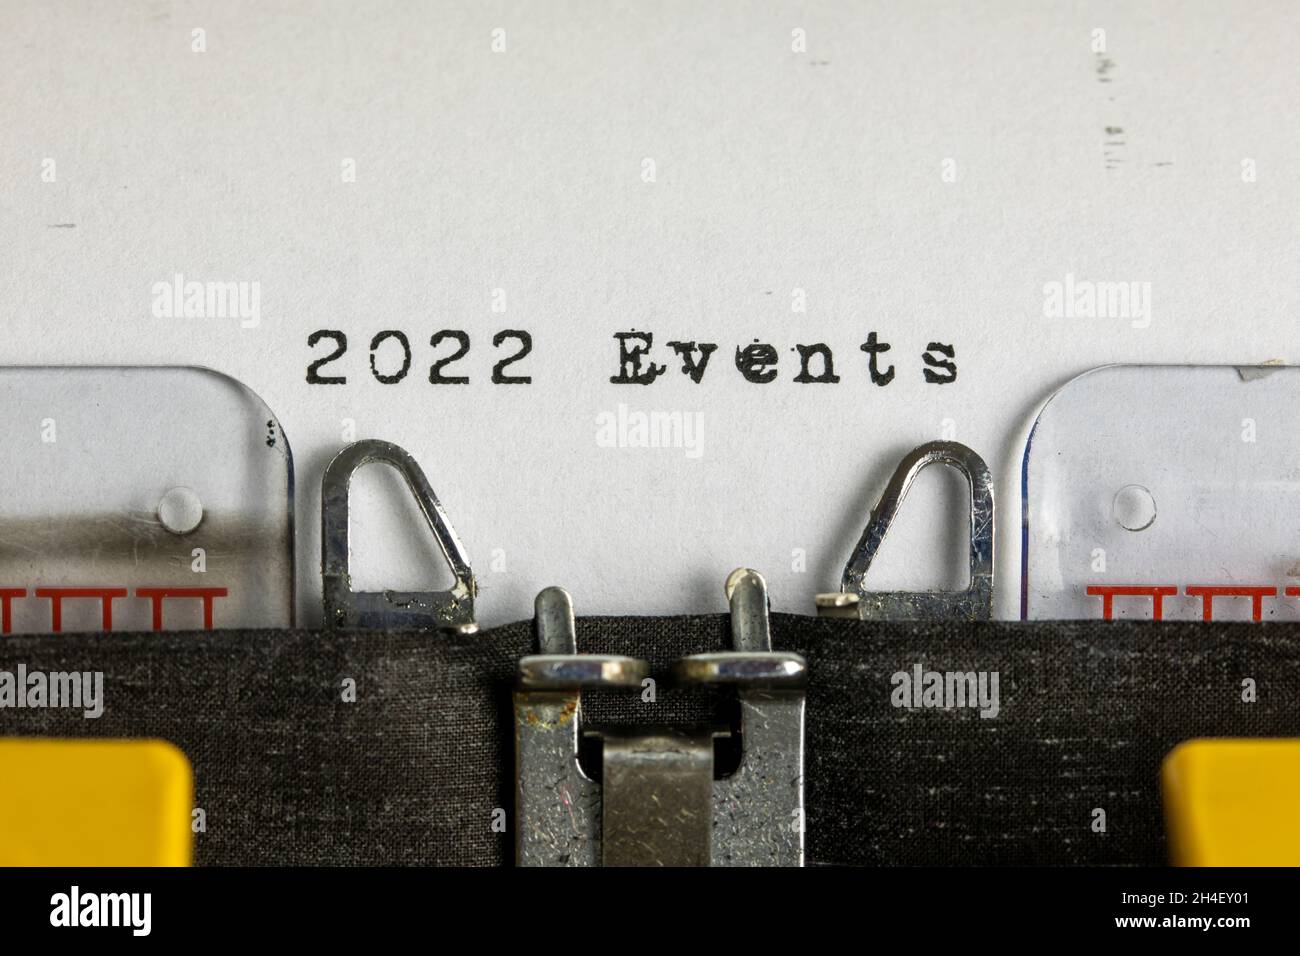 2022 événements écrits sur une vieille machine à écrire Banque D'Images